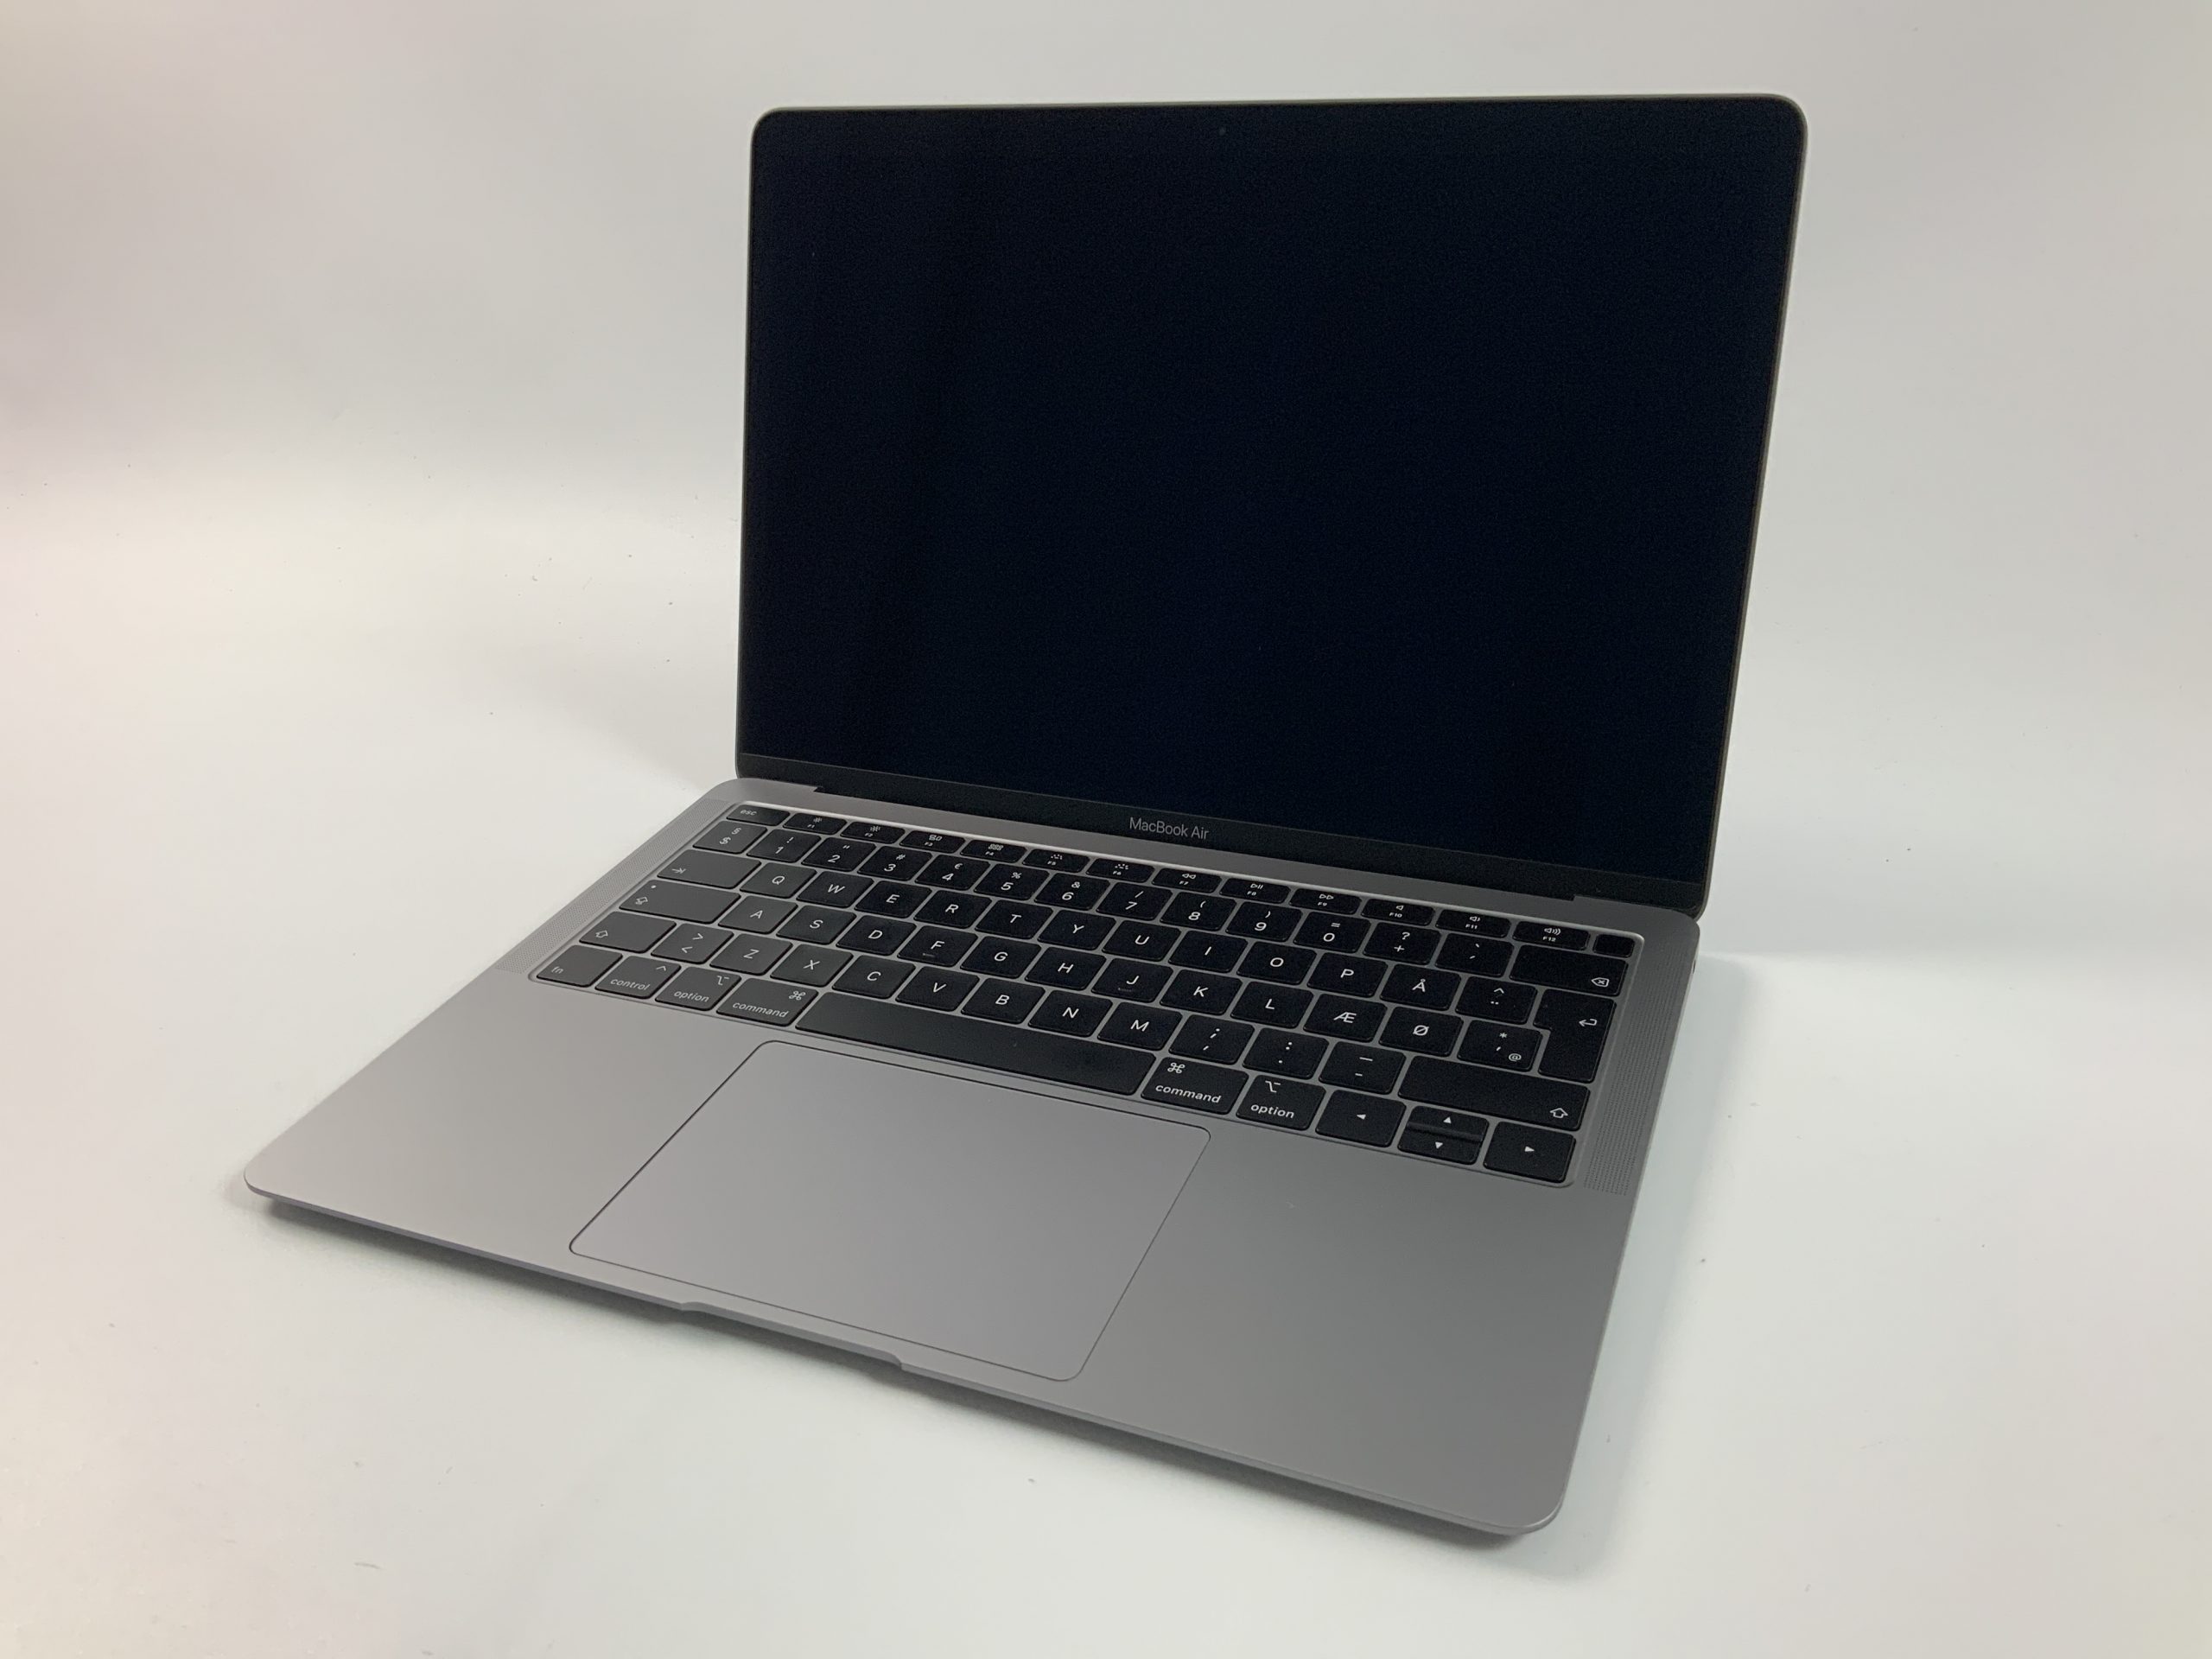 MacBook Air 13" Mid 2019 (Intel Core i5 1.6 GHz 8 GB RAM 128 GB SSD), Space Gray, Intel Core i5 1.6 GHz, 8 GB RAM, 128 GB SSD, immagine 1